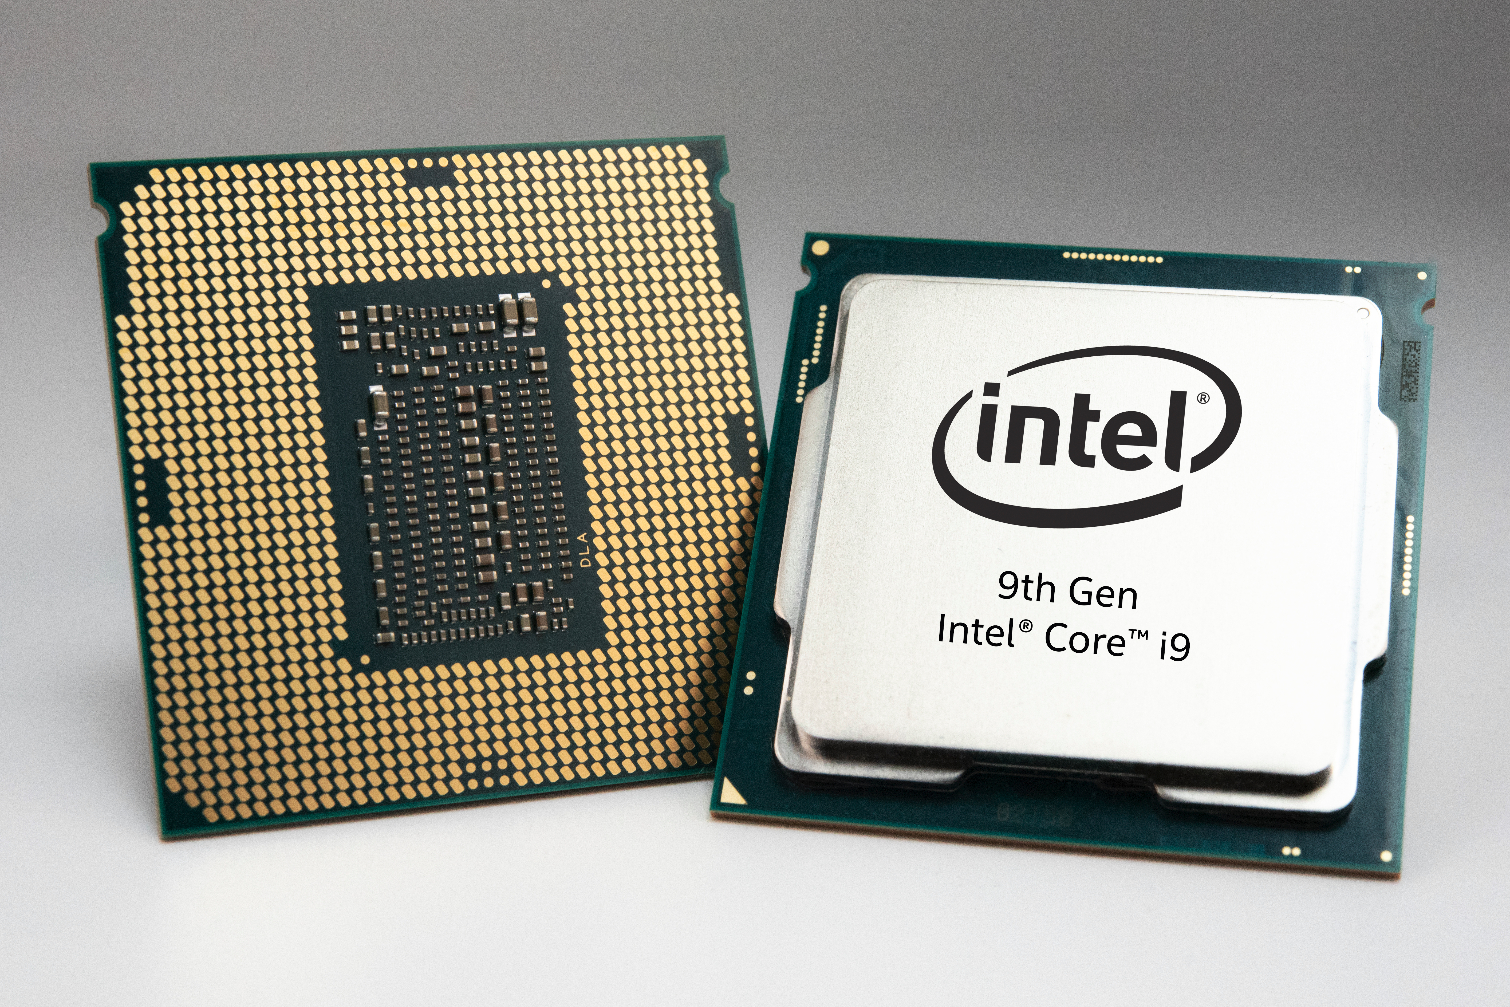 Verbeteren Belangrijk nieuws saai Intel Core i7-9700K 9th Gen CPU Review: Eight Cores And No Hyper-Threading  - Tom's Hardware | Tom's Hardware